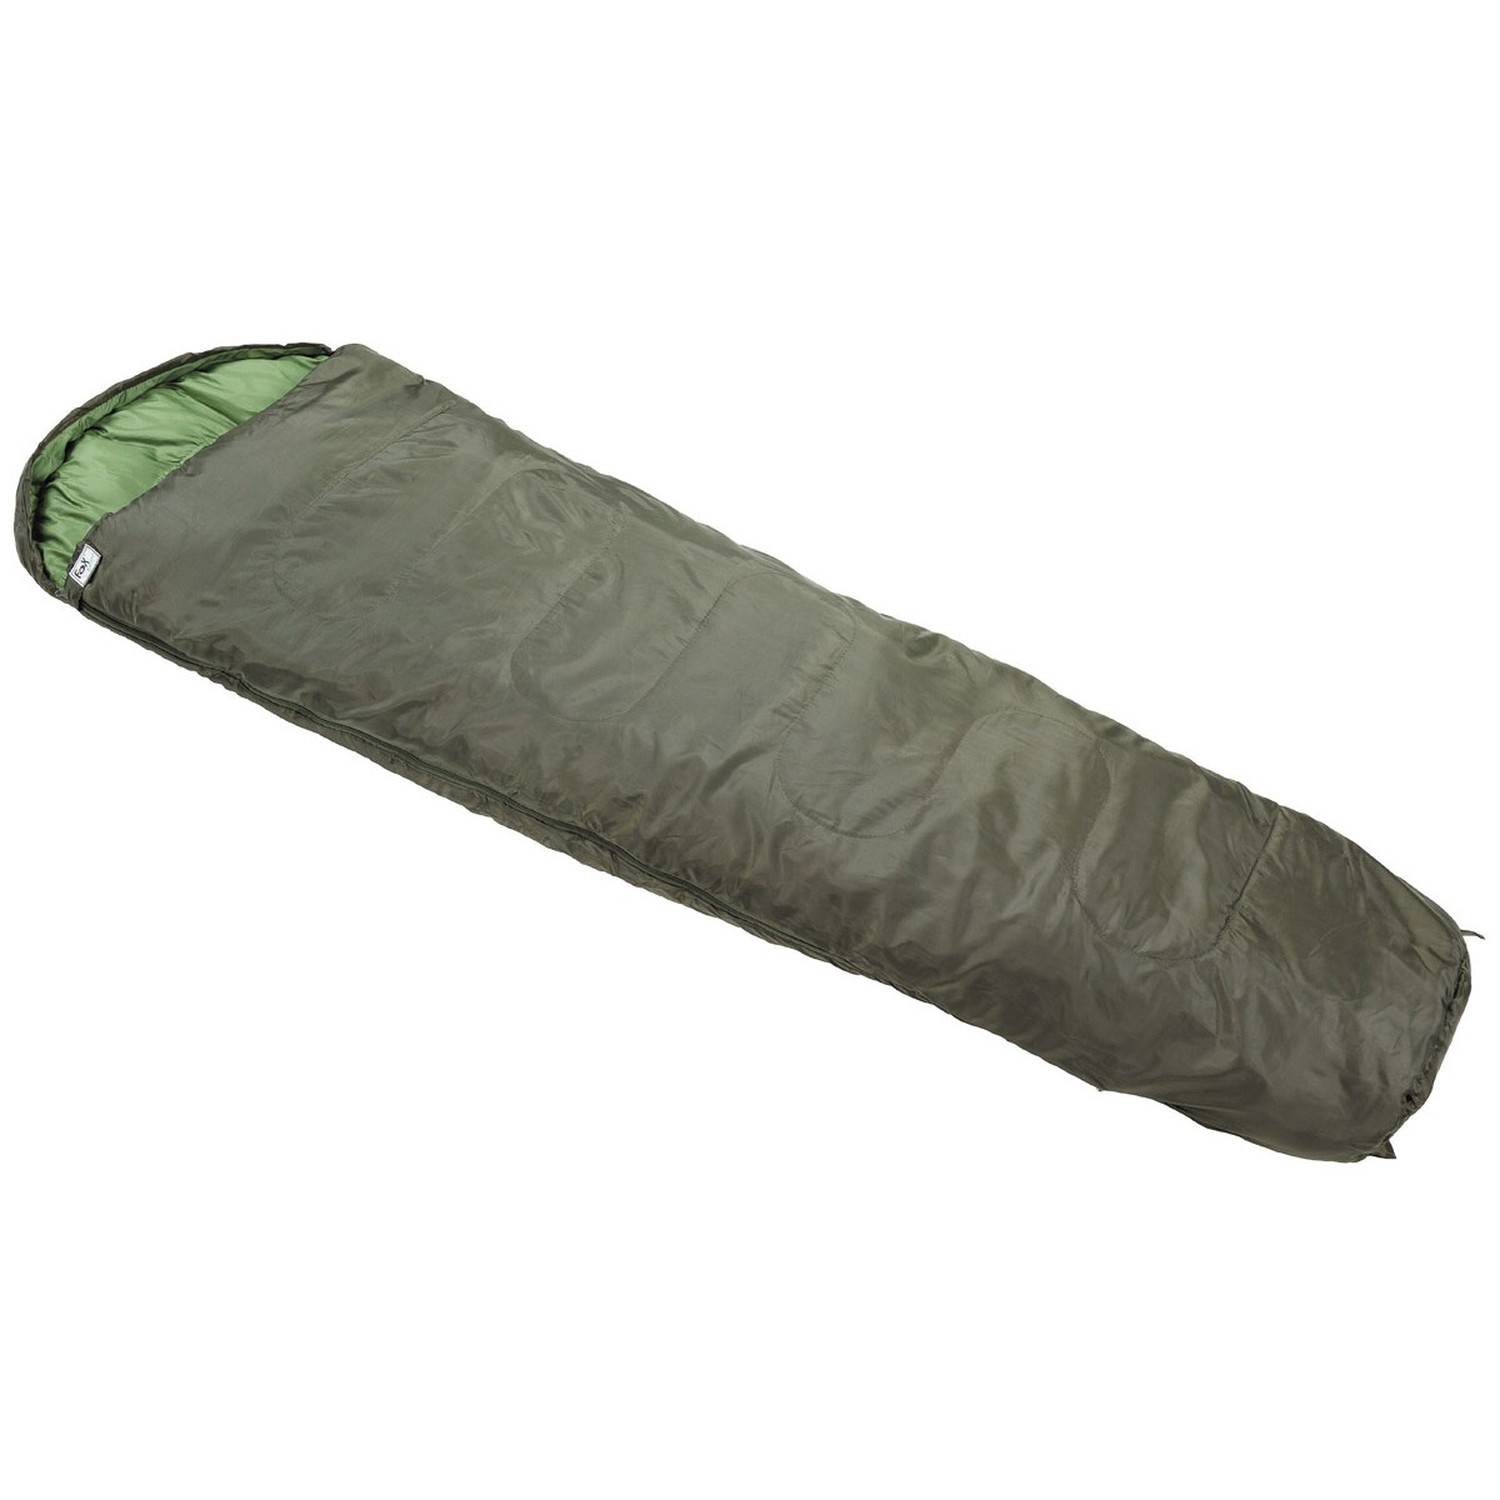 3-Jahreszeiten-Schlafsack in Oliv, Mumienform mit Wärmekragen bis -10°C inkl. Packsack